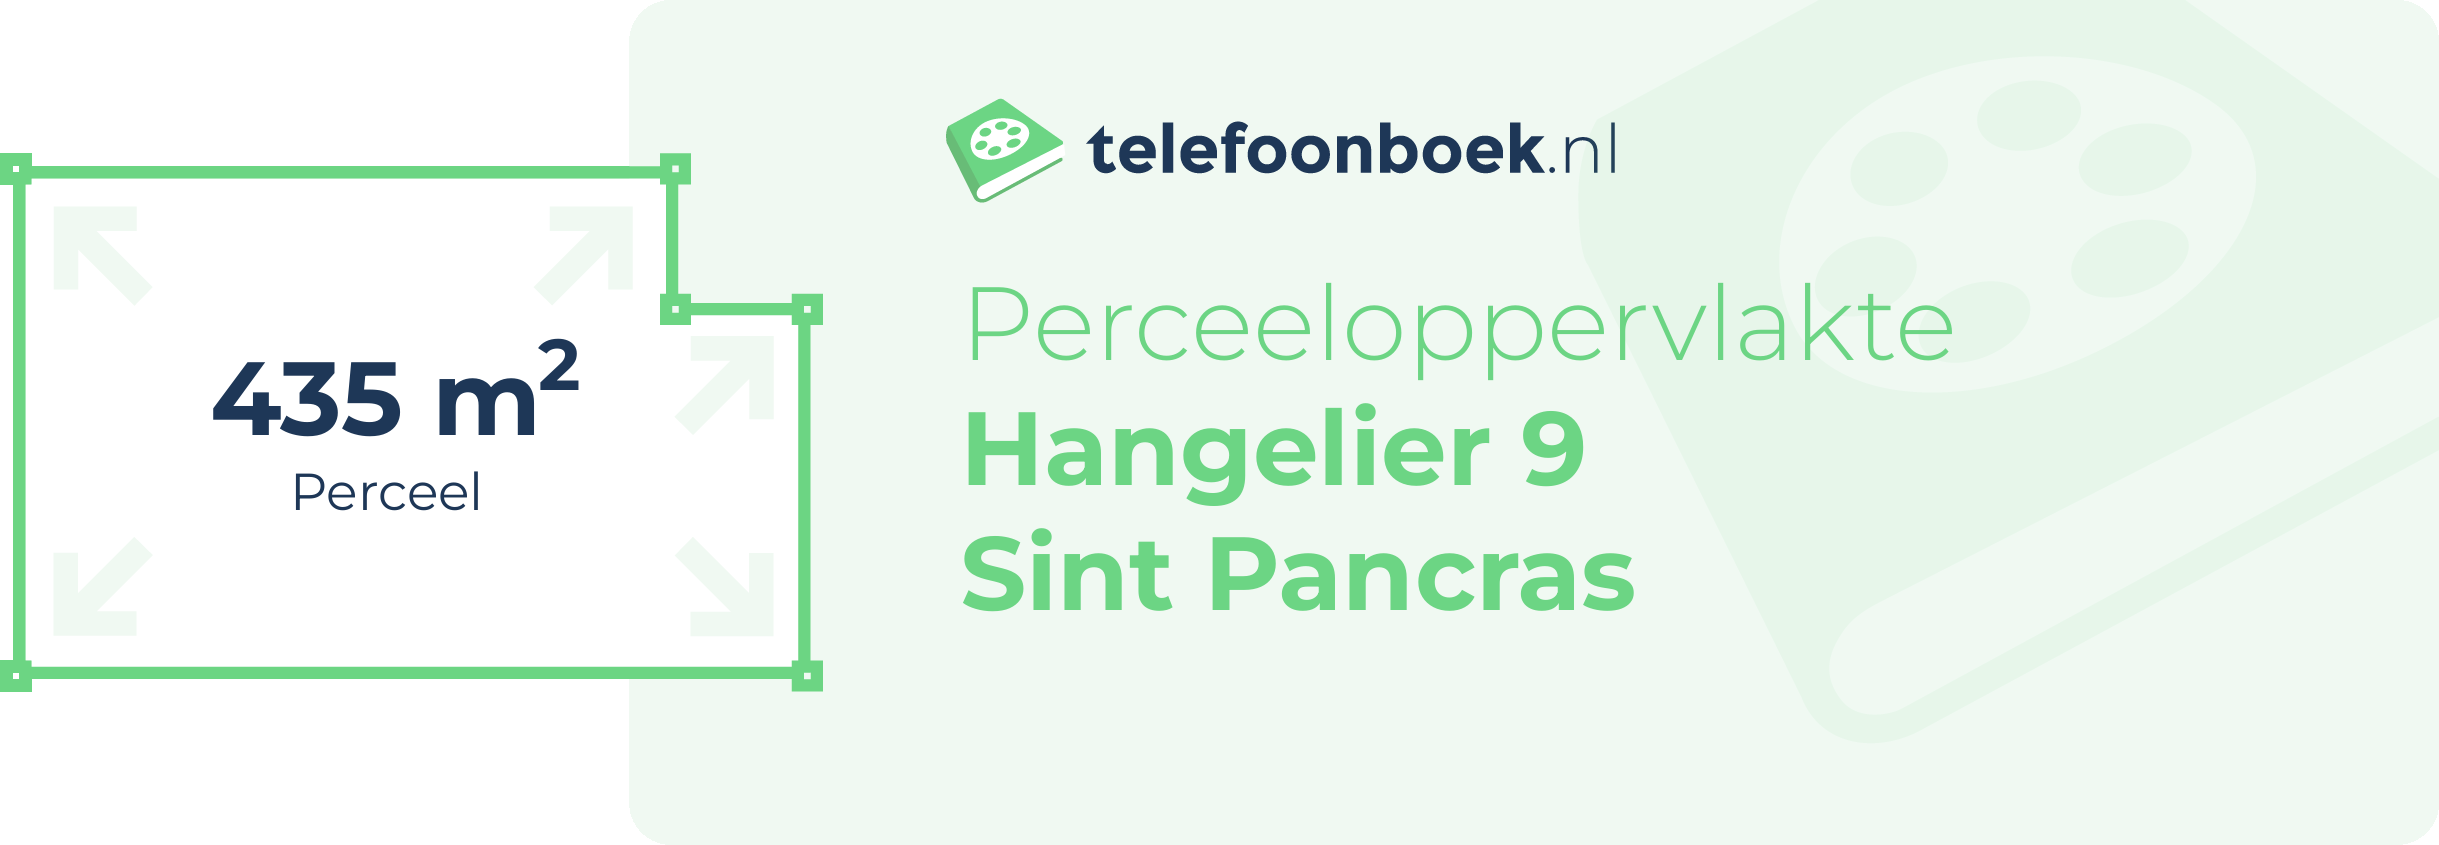 Perceeloppervlakte Hangelier 9 Sint Pancras